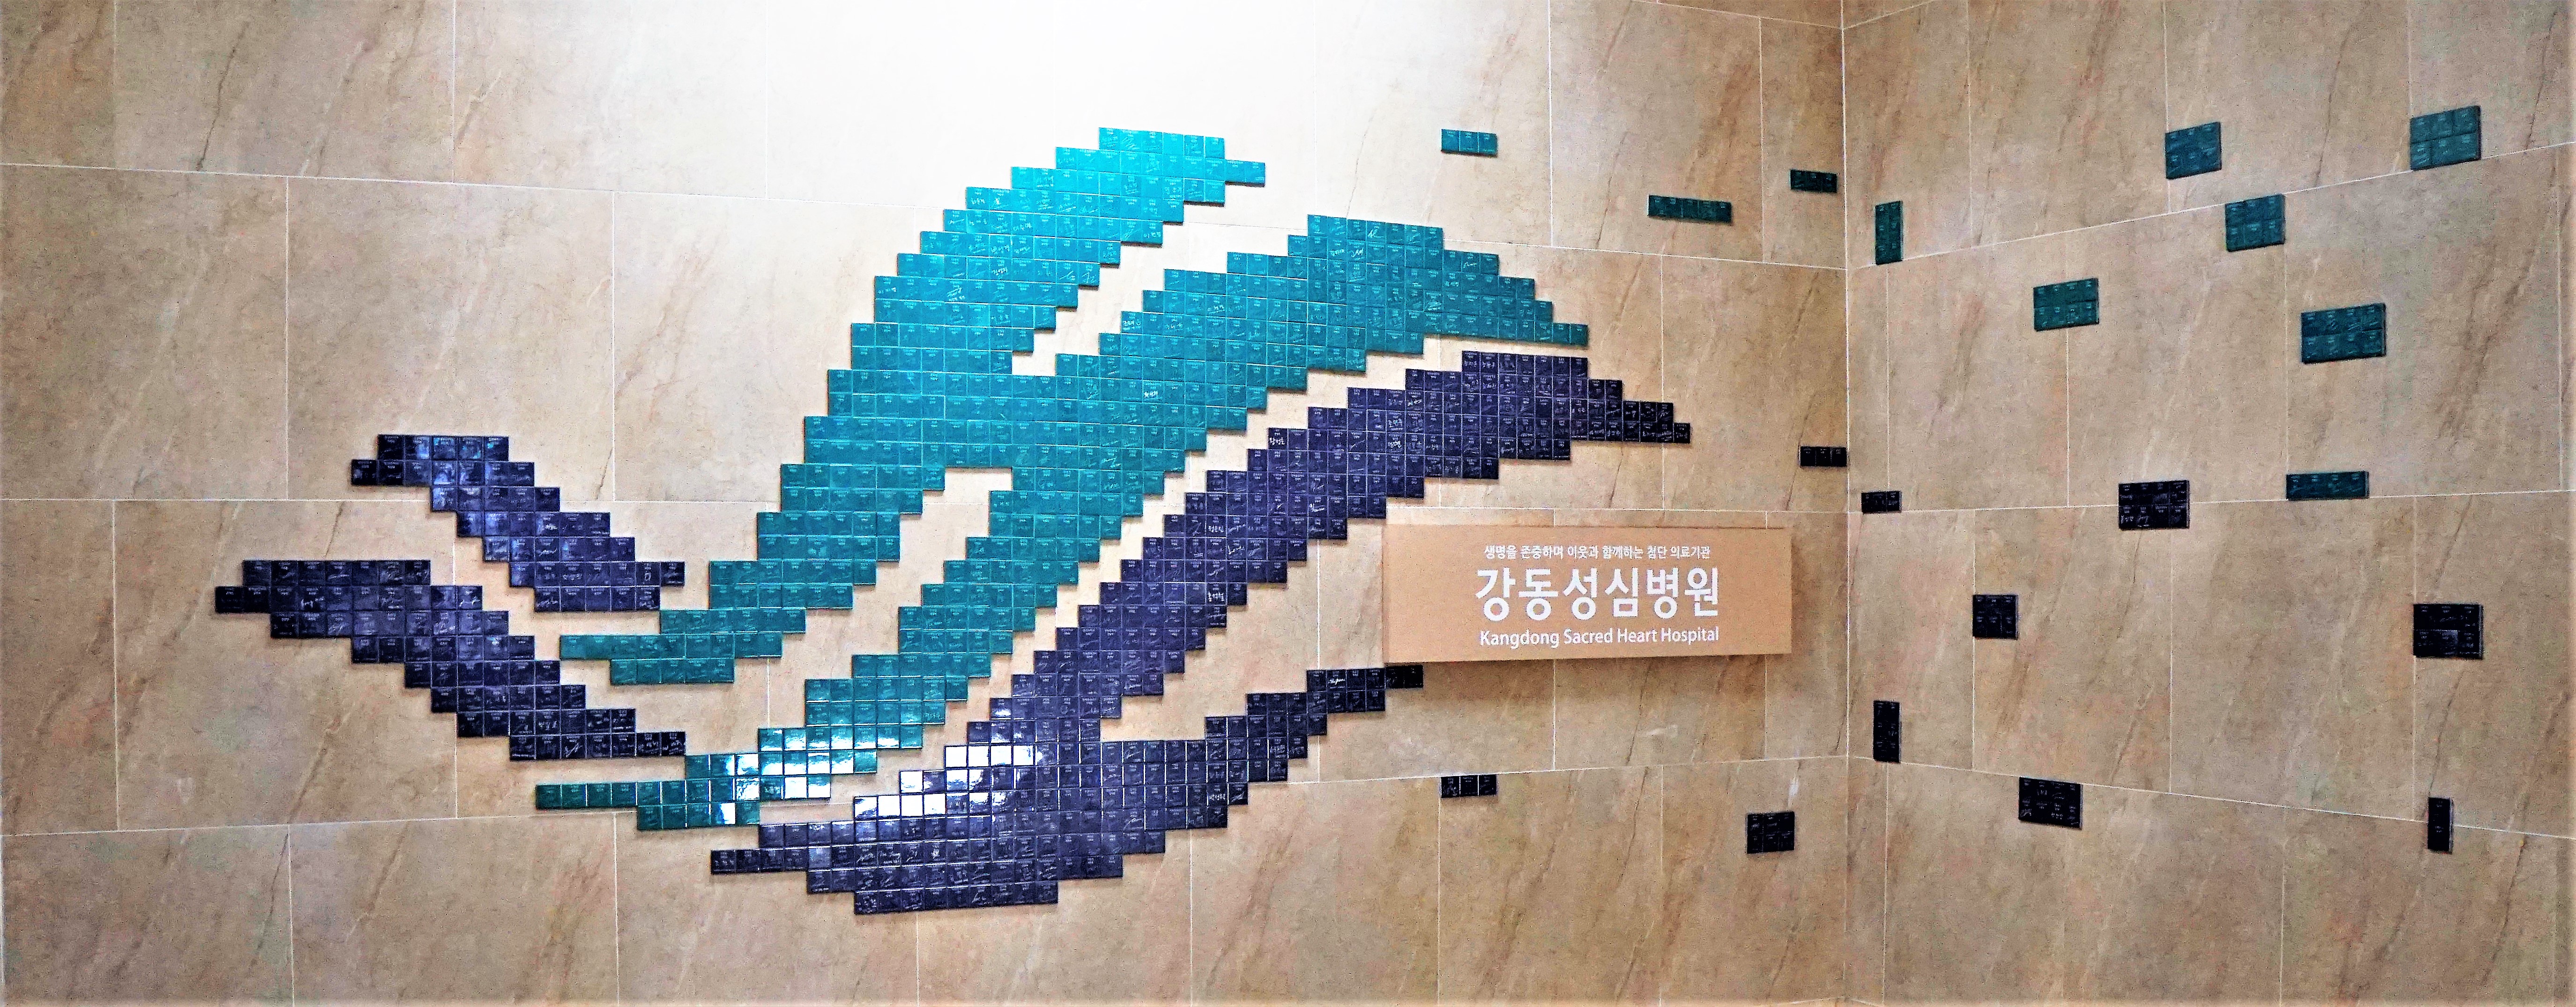 본관 지하 계단에 있는 명의료진 명찰로 만든 로고 설치물 